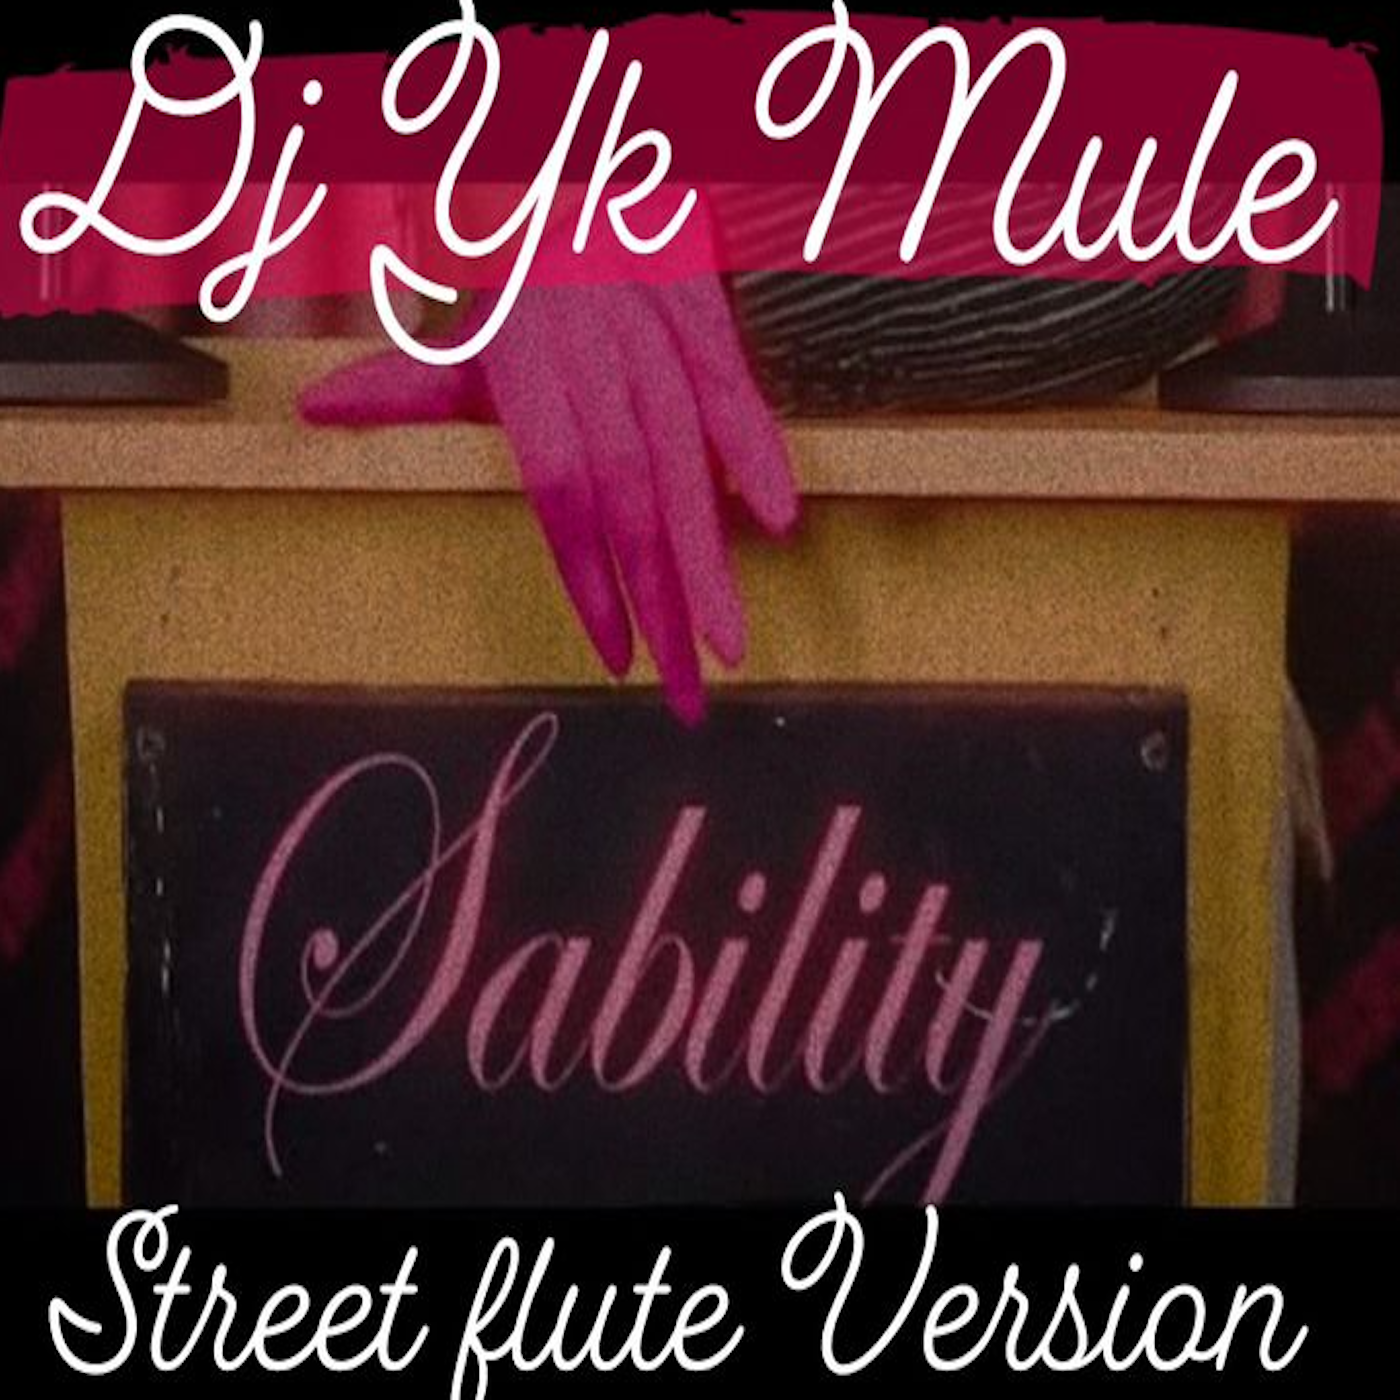 Dj Yk Beats Mule - Sability Street Flute